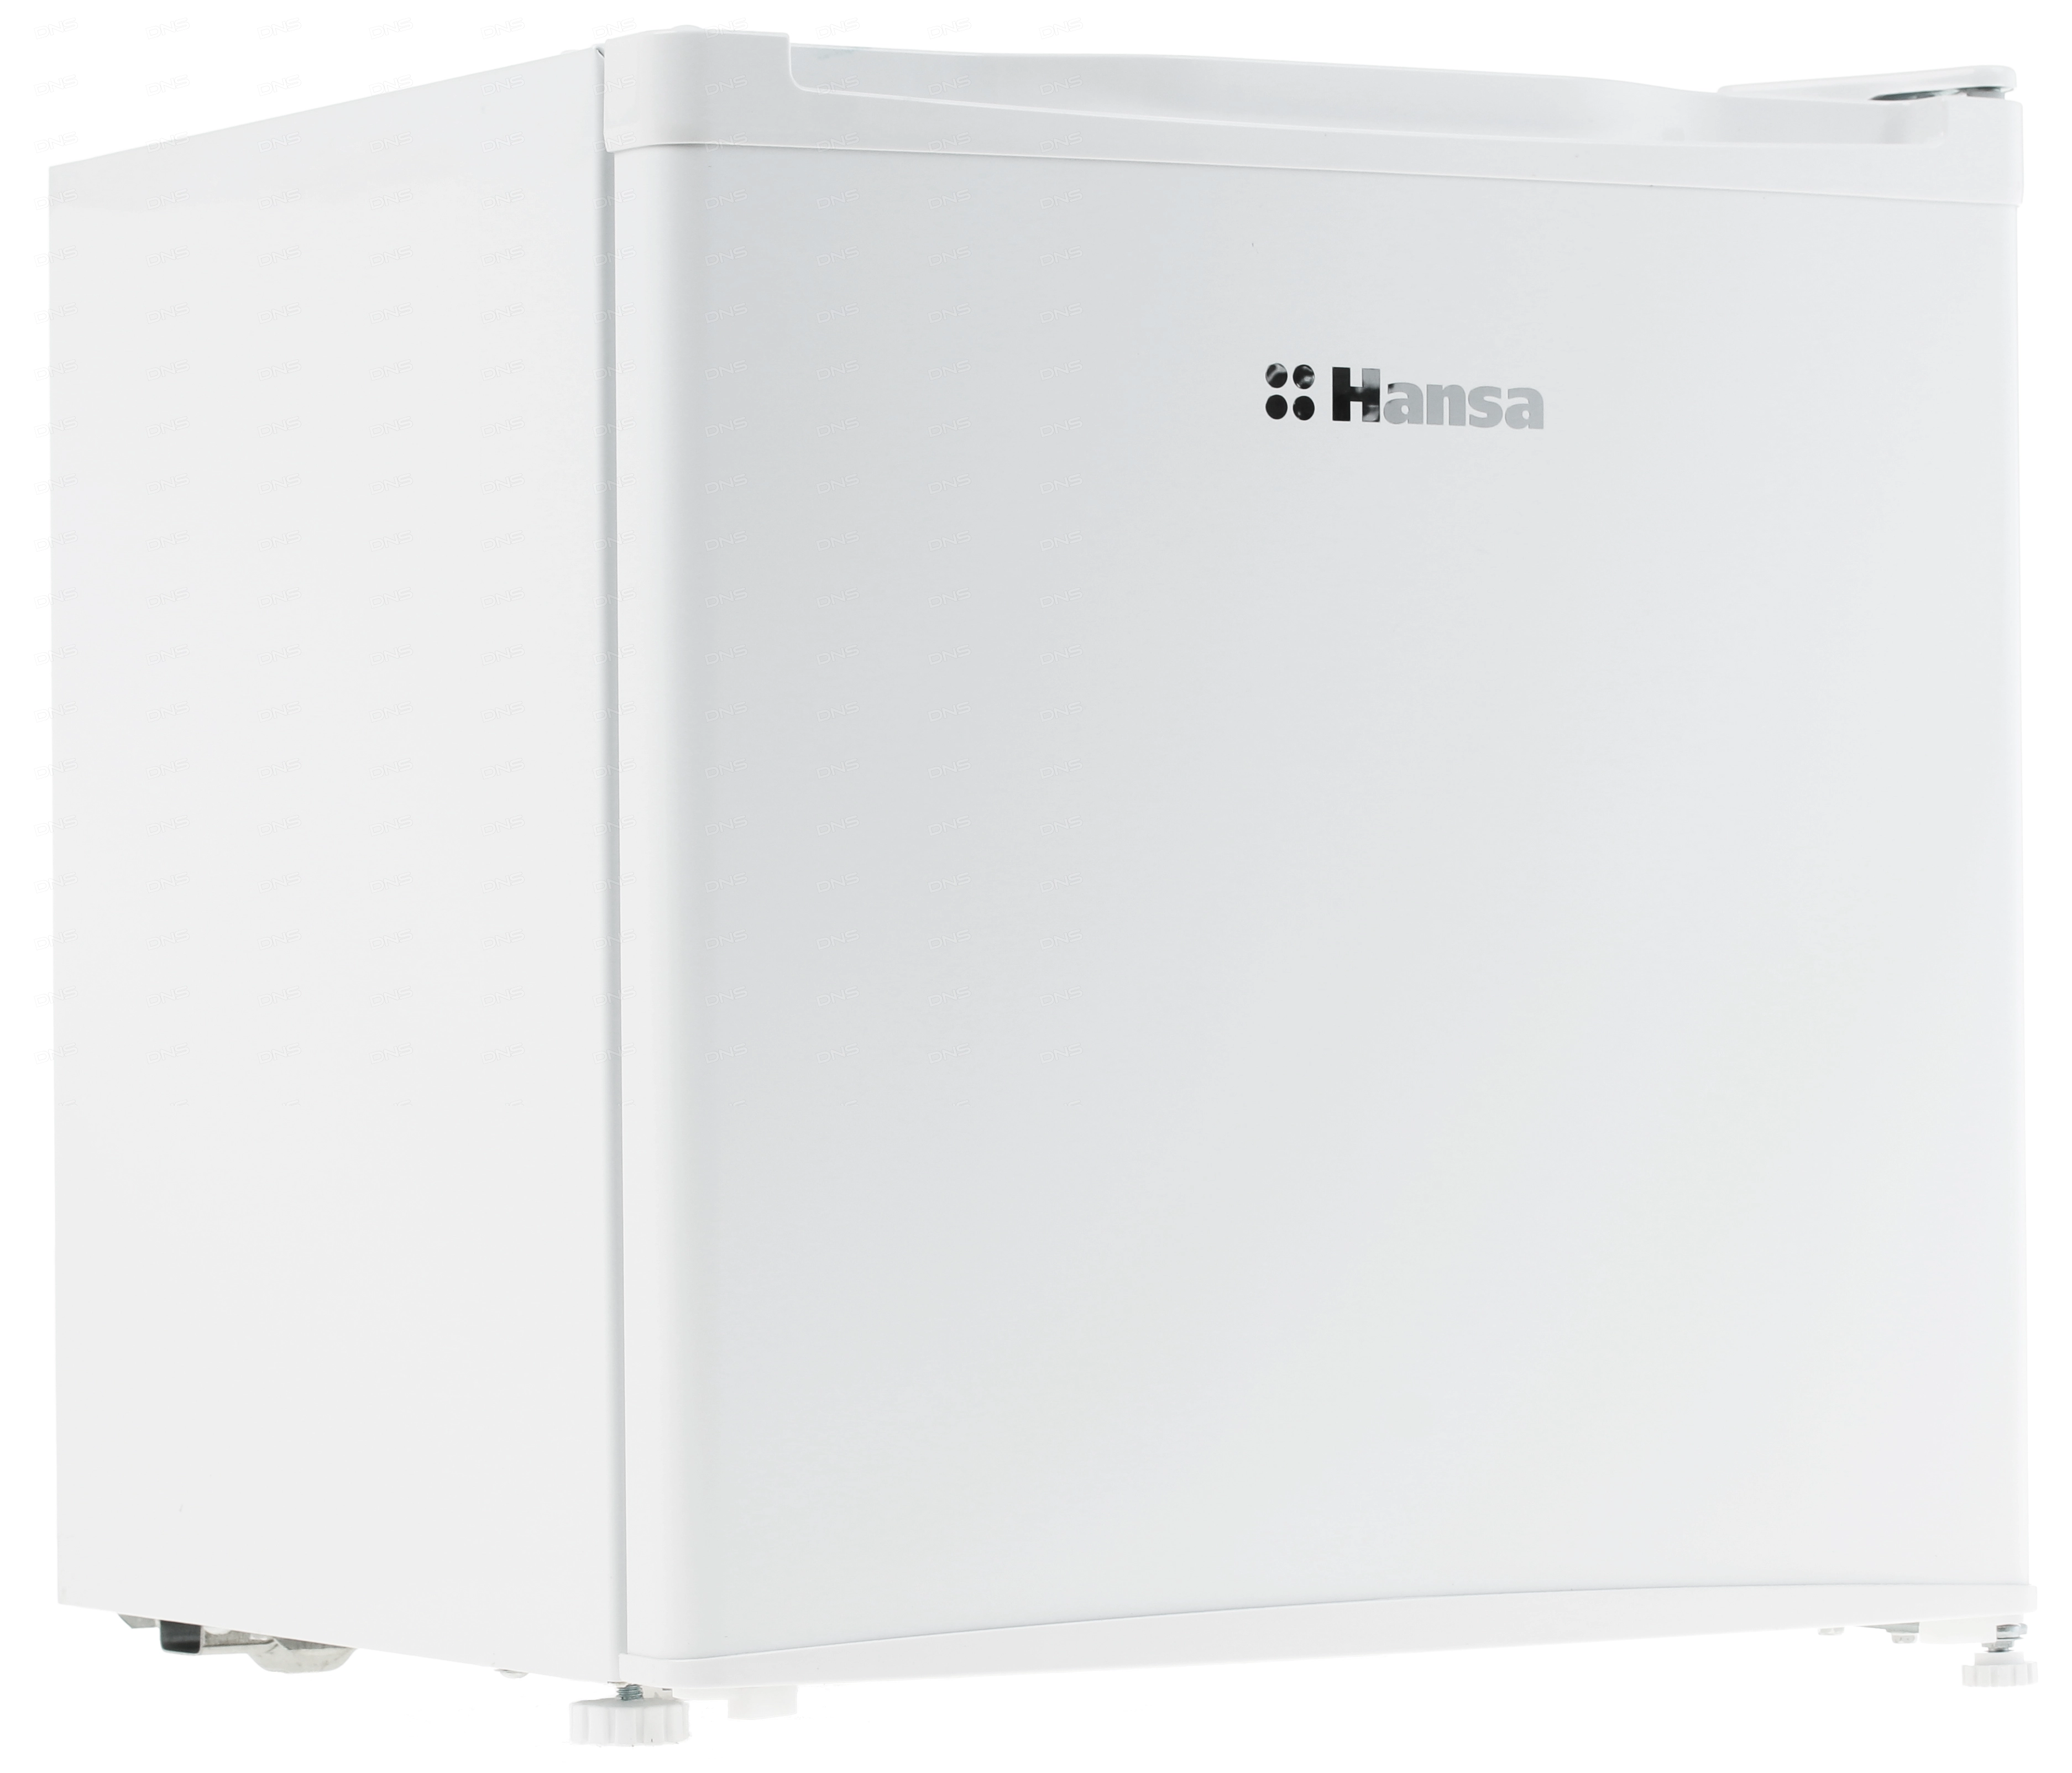 Холодильник компактный Hansa FM050.4 белый [46 л, внешнее покрытие-металл, размораживание - ручное, 47 см х 49.6 см х 44.7 см]